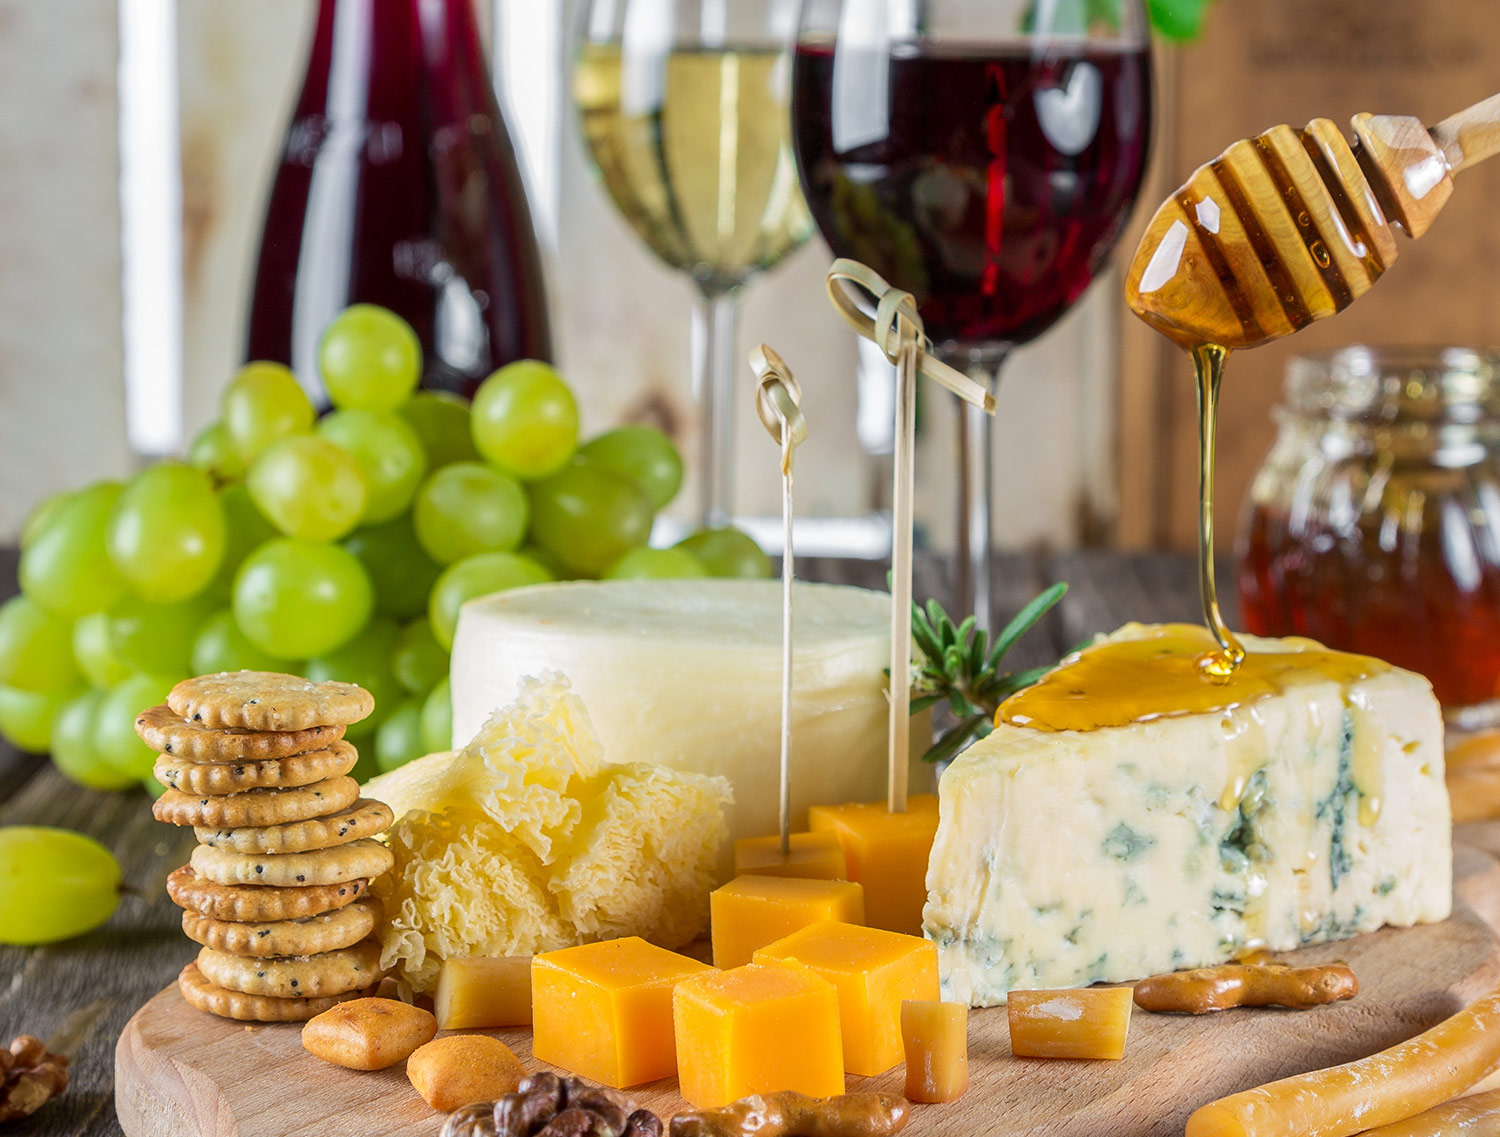 Die Hochzeit von Käse und Wein - Der Eichhof